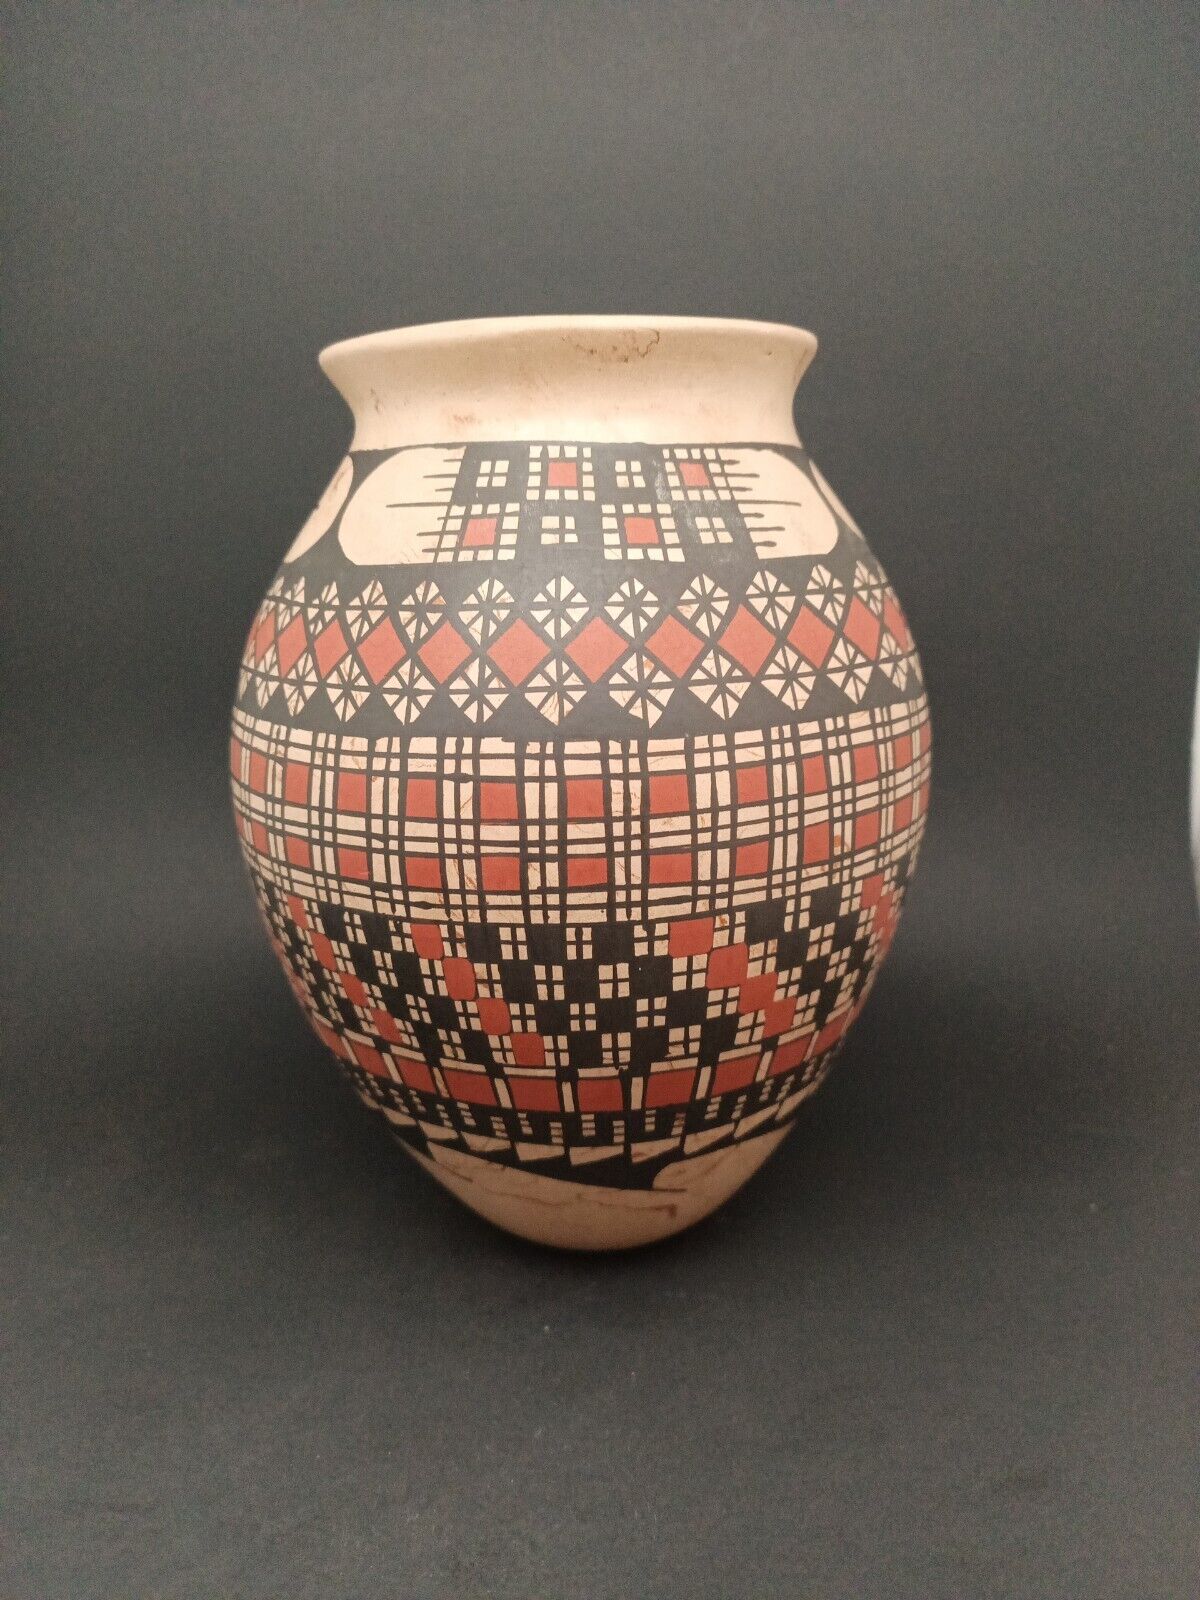 Mata Ortiz Pottery by Juana Romero Hand made and hand painted.